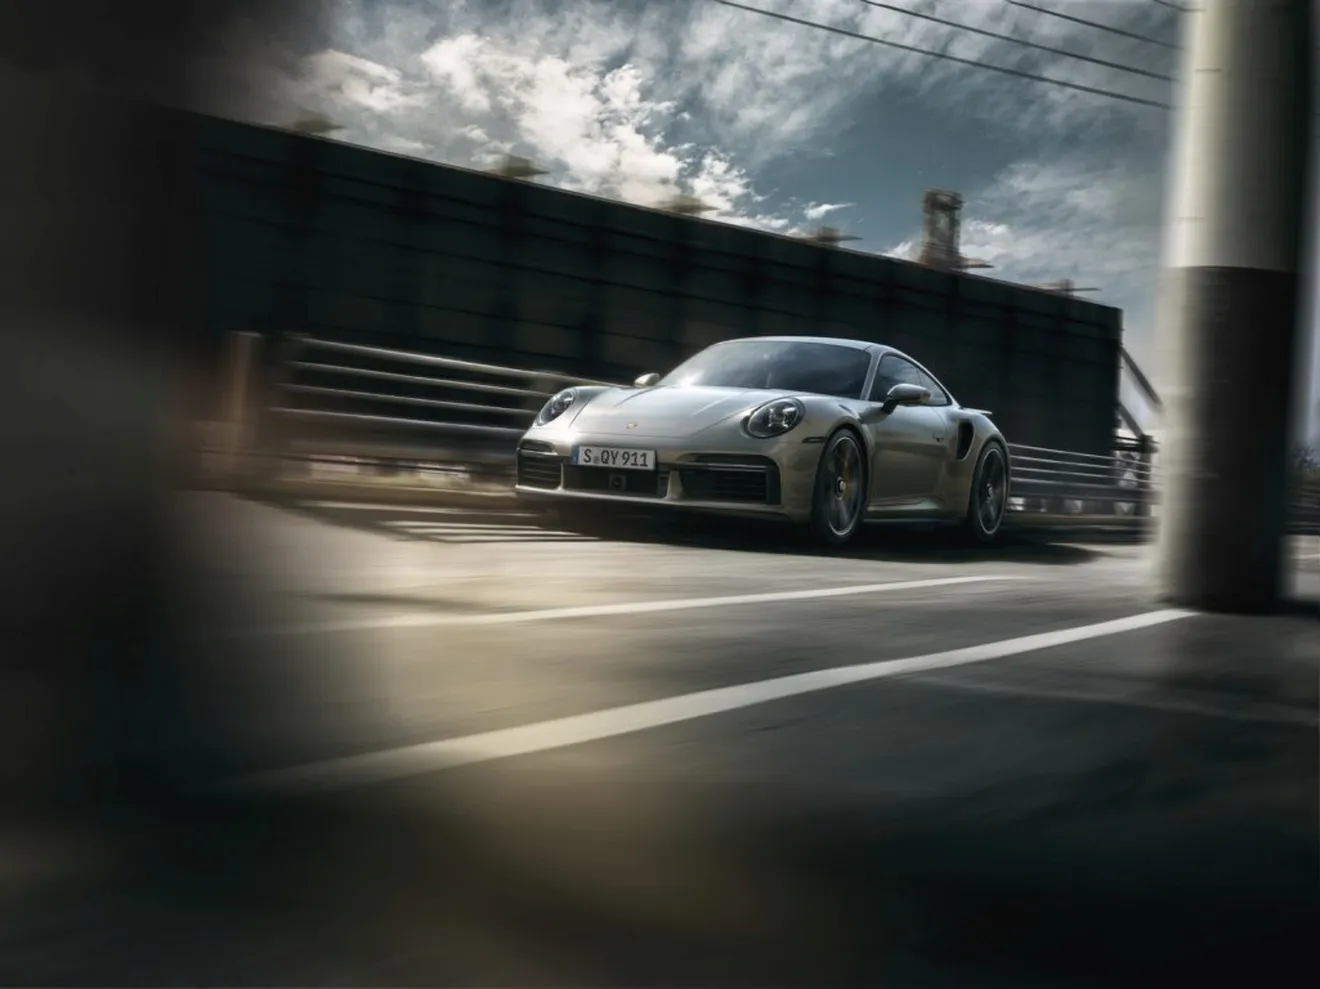 Llegan los nuevos Porsche 911 Turbo S coupé y Cabrio 2020, ya con precios en España